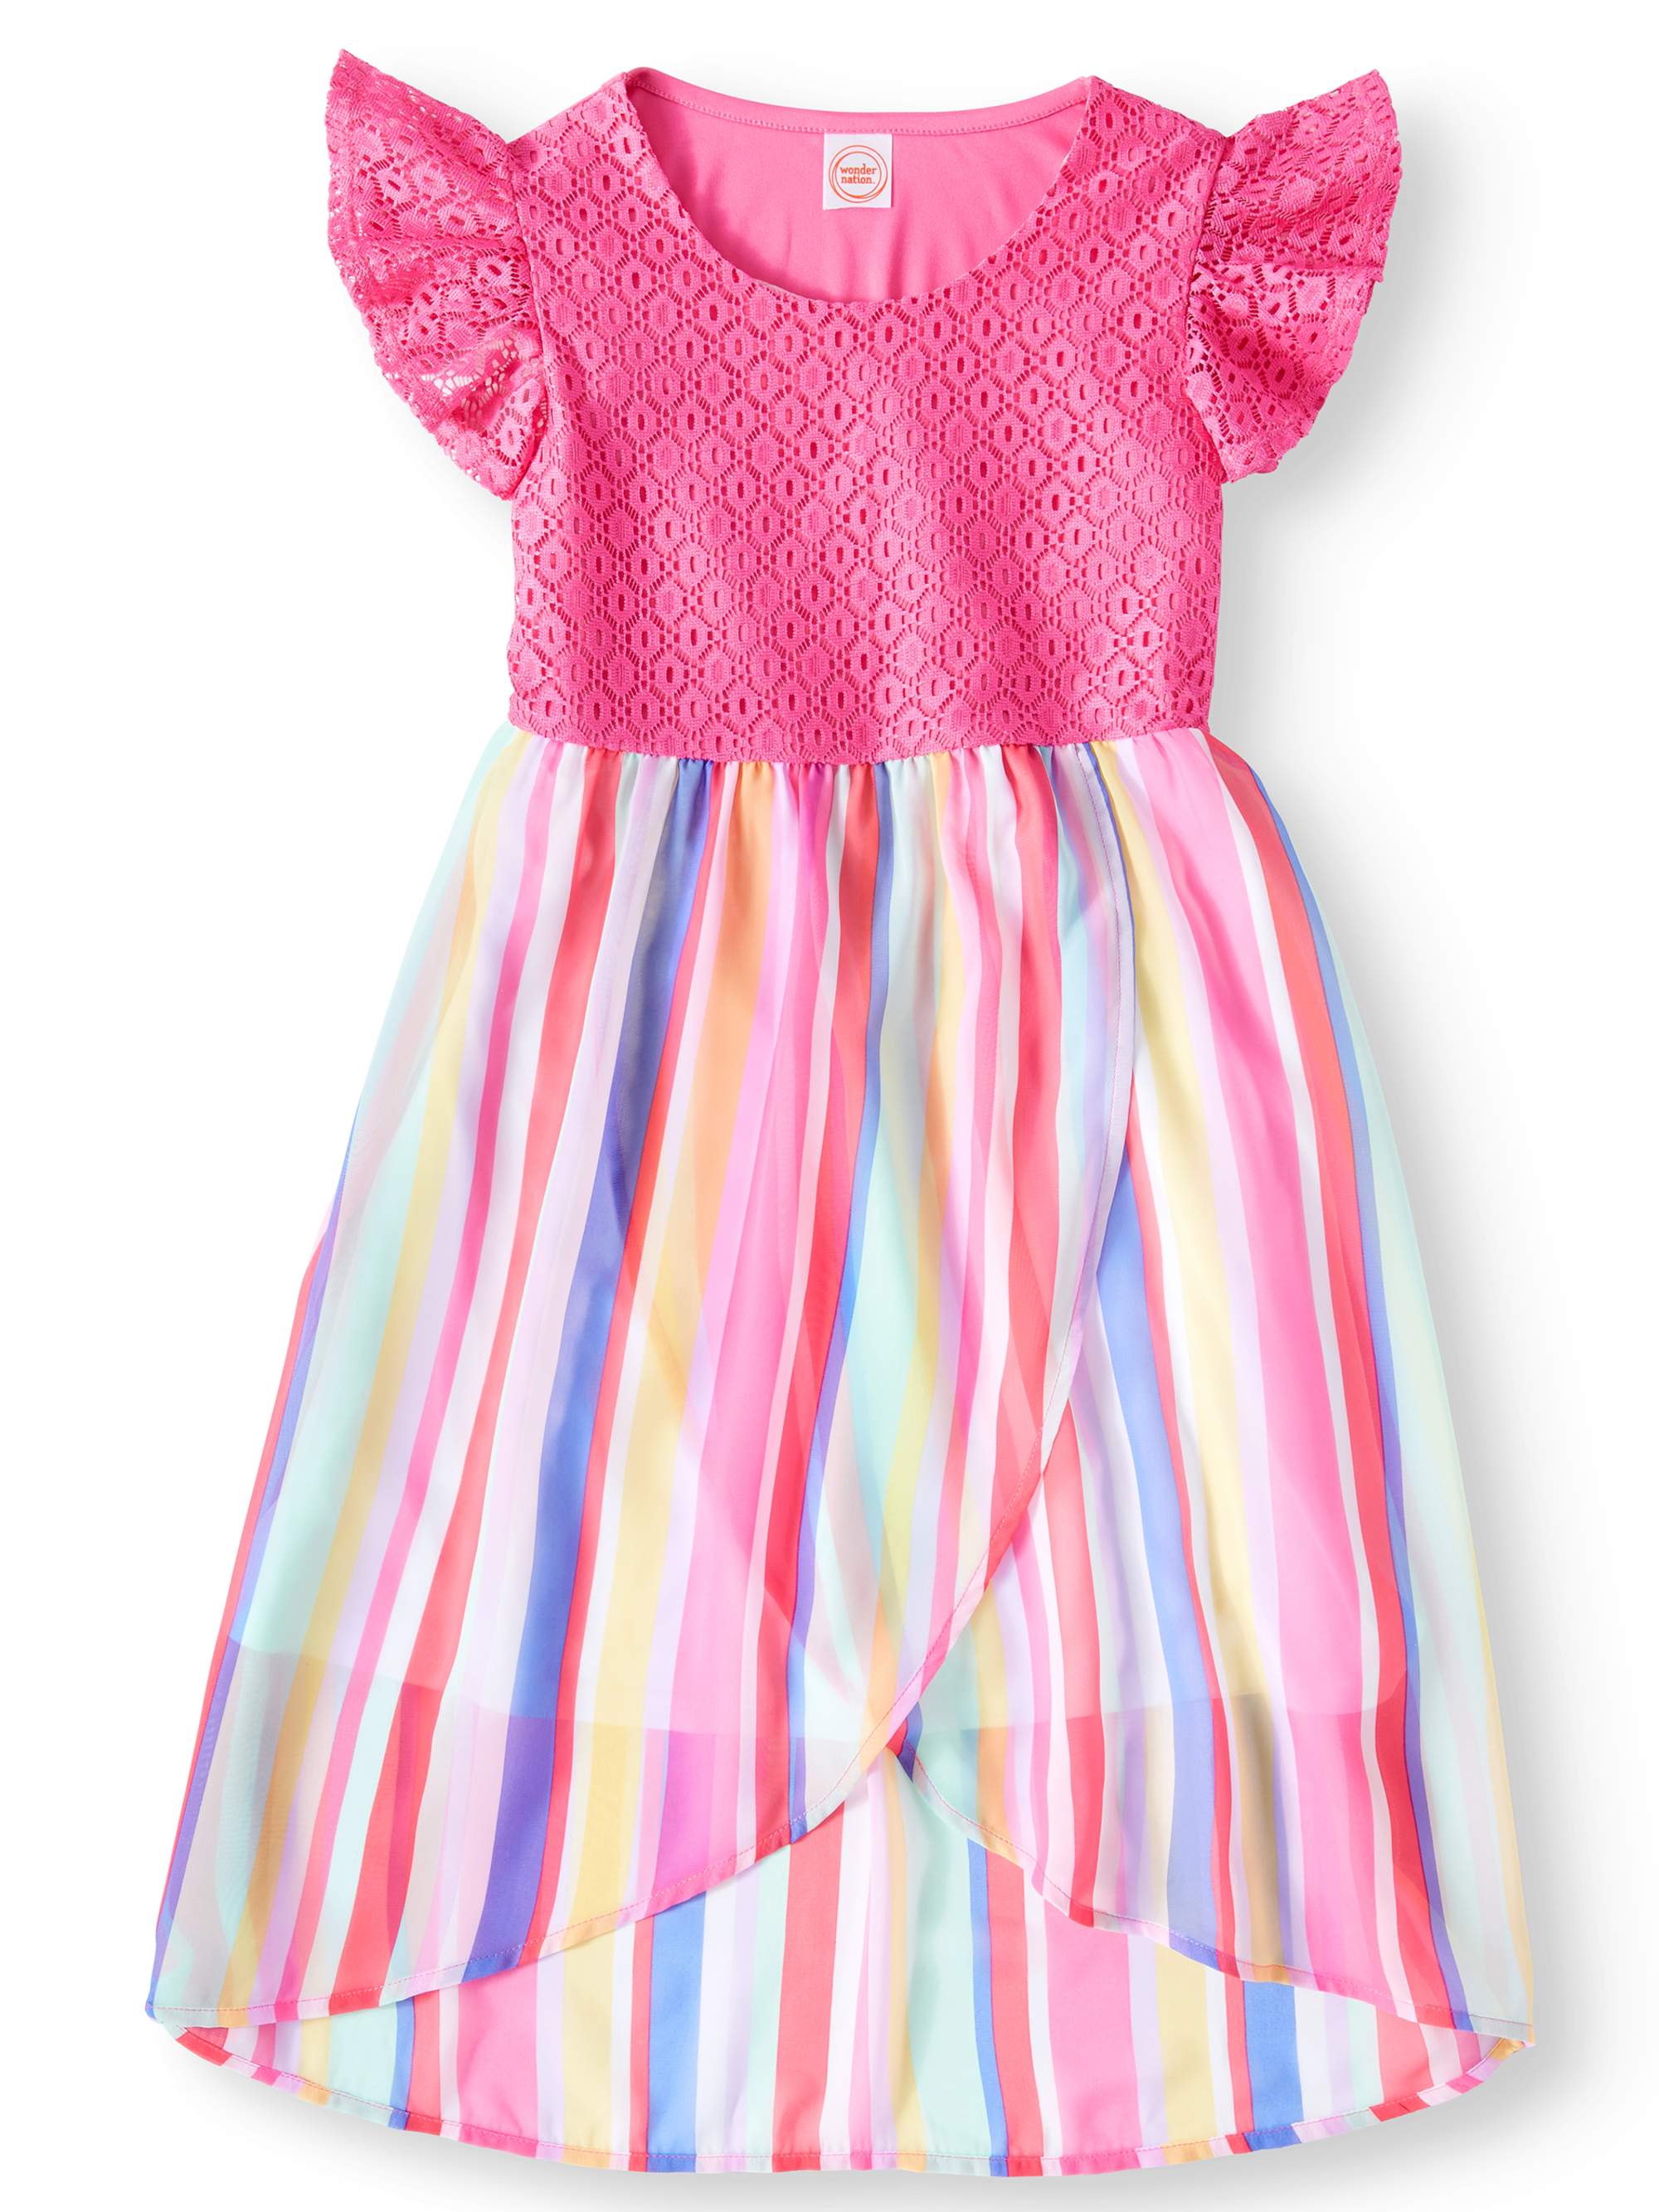 Wonder Nation Lace and Chiffon Dress (Little Girls, Big Girls & Big Girls Plus) Clearance - image 1 of 3